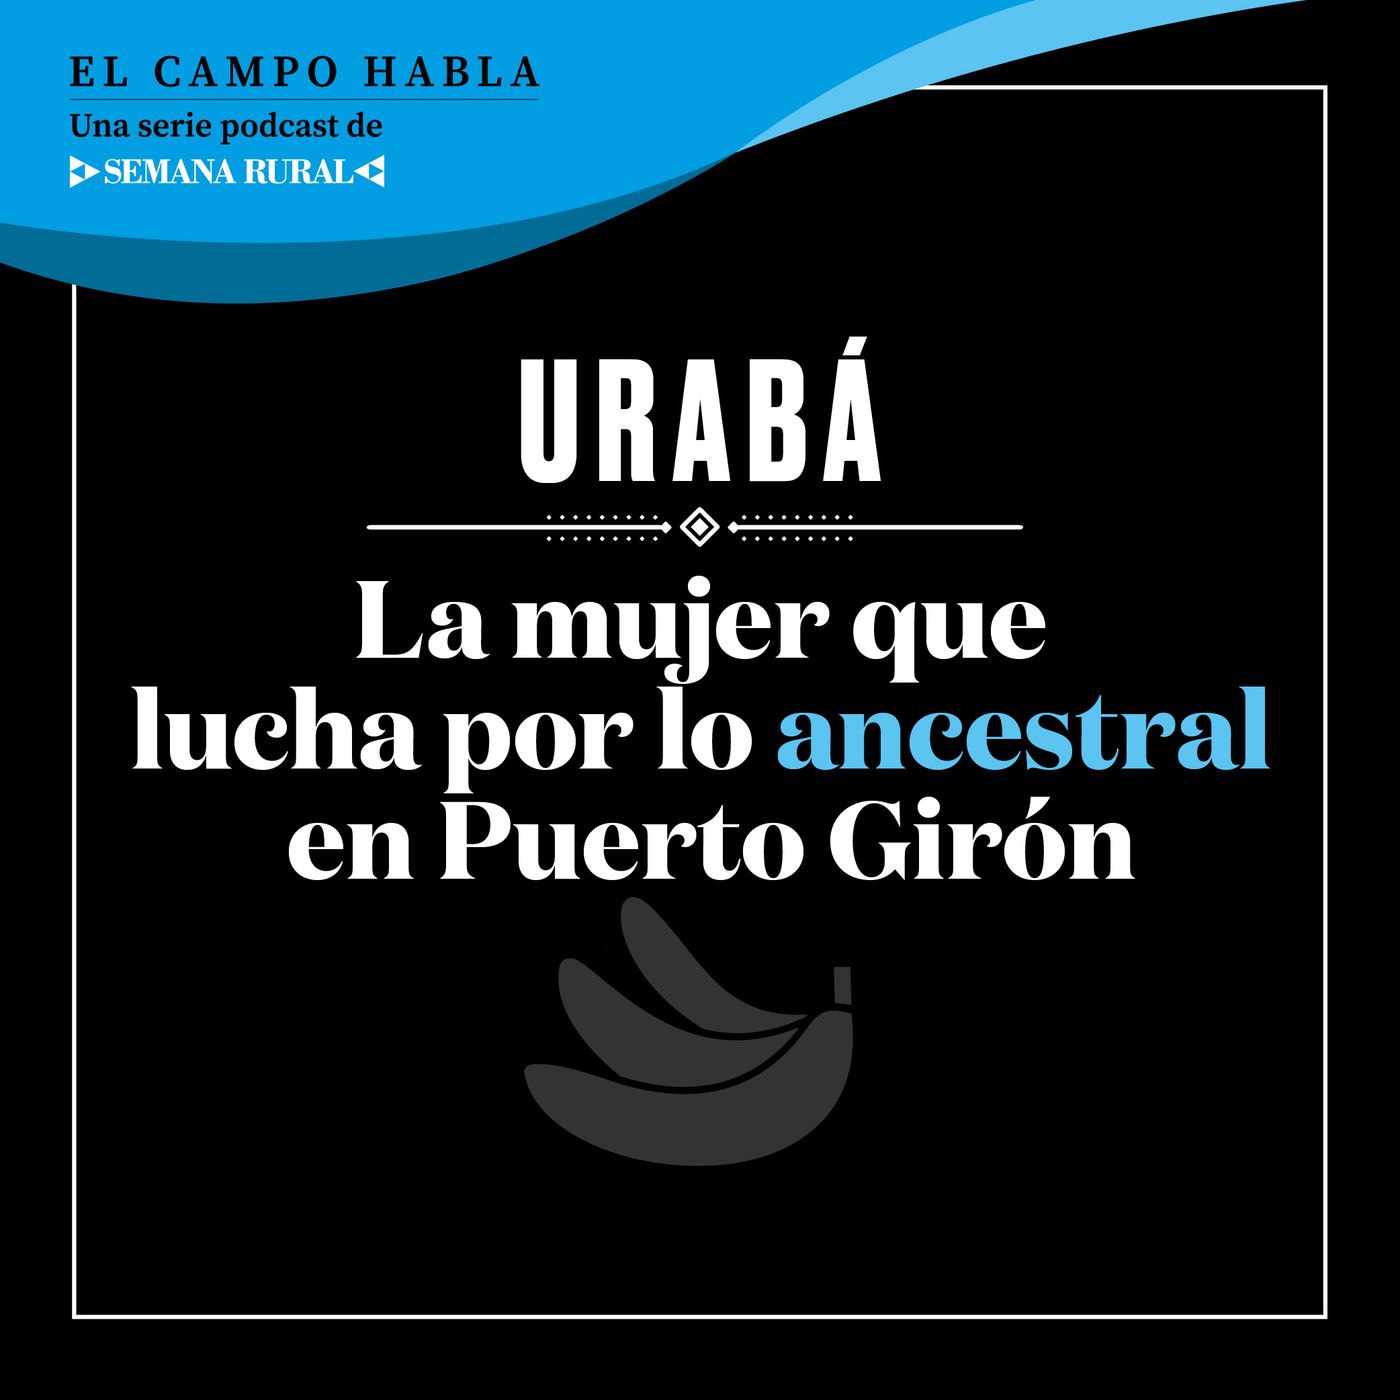 URABÁ. La mujer que lucha por lo ancestral en Puerto Girón